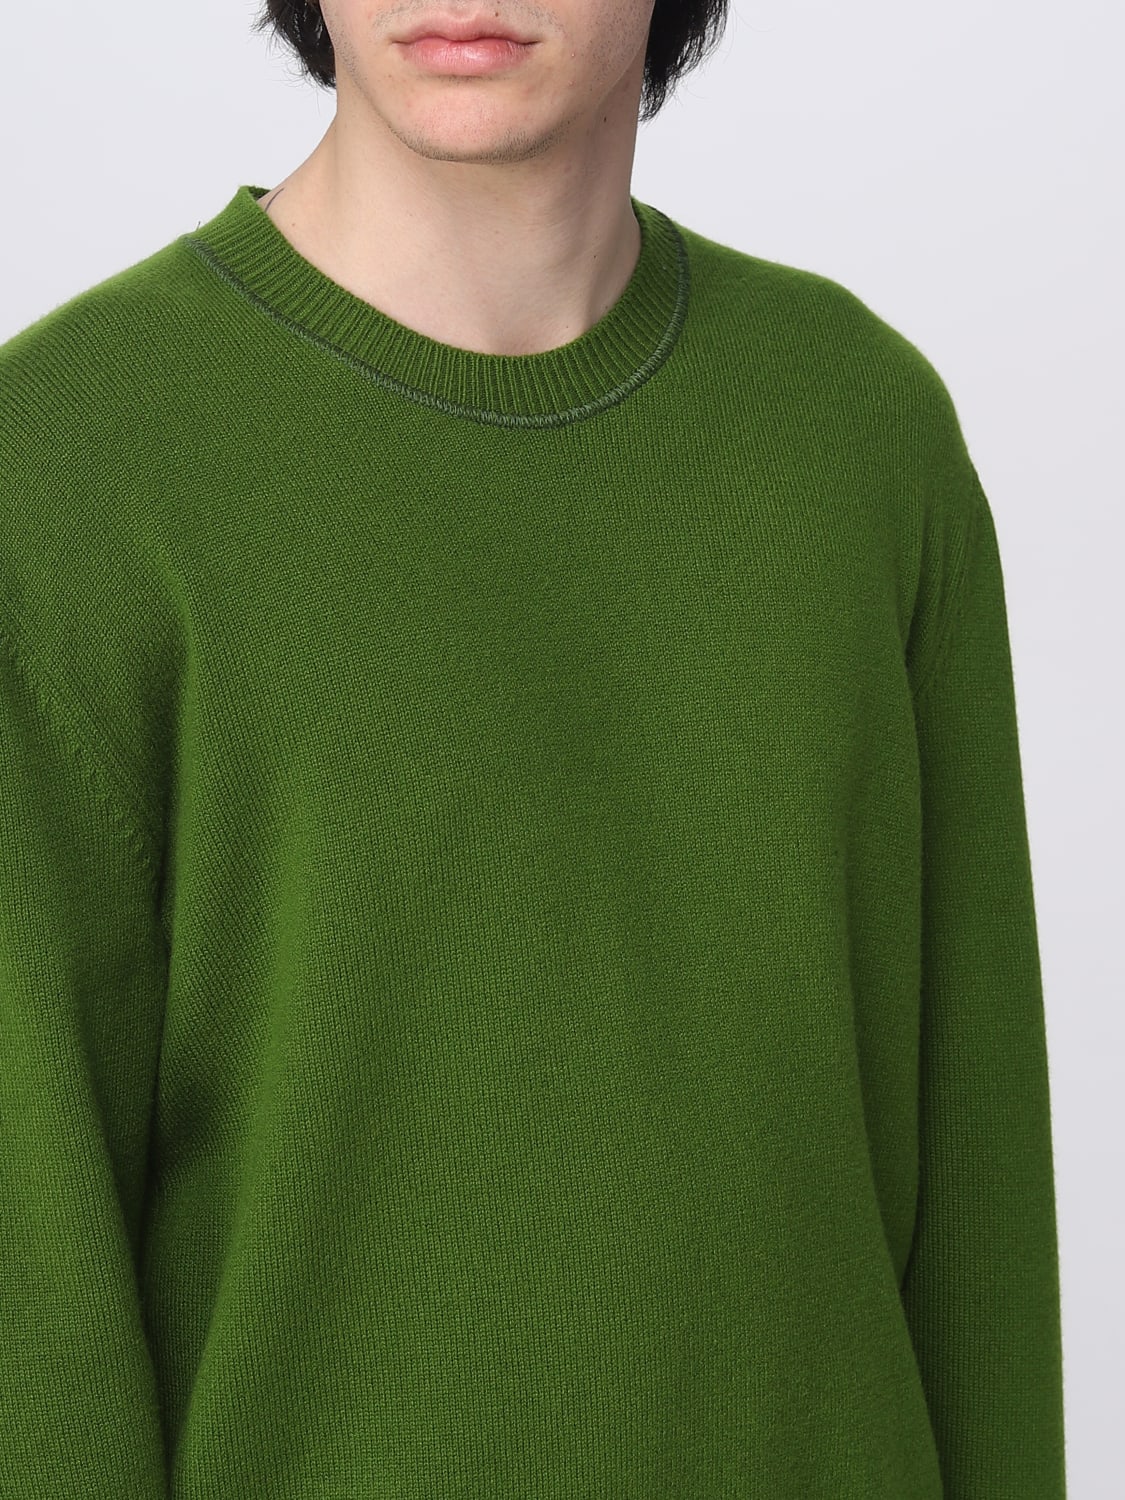 BOTTEGA VENETA: cashmere sweater - Green | Bottega Veneta sweater